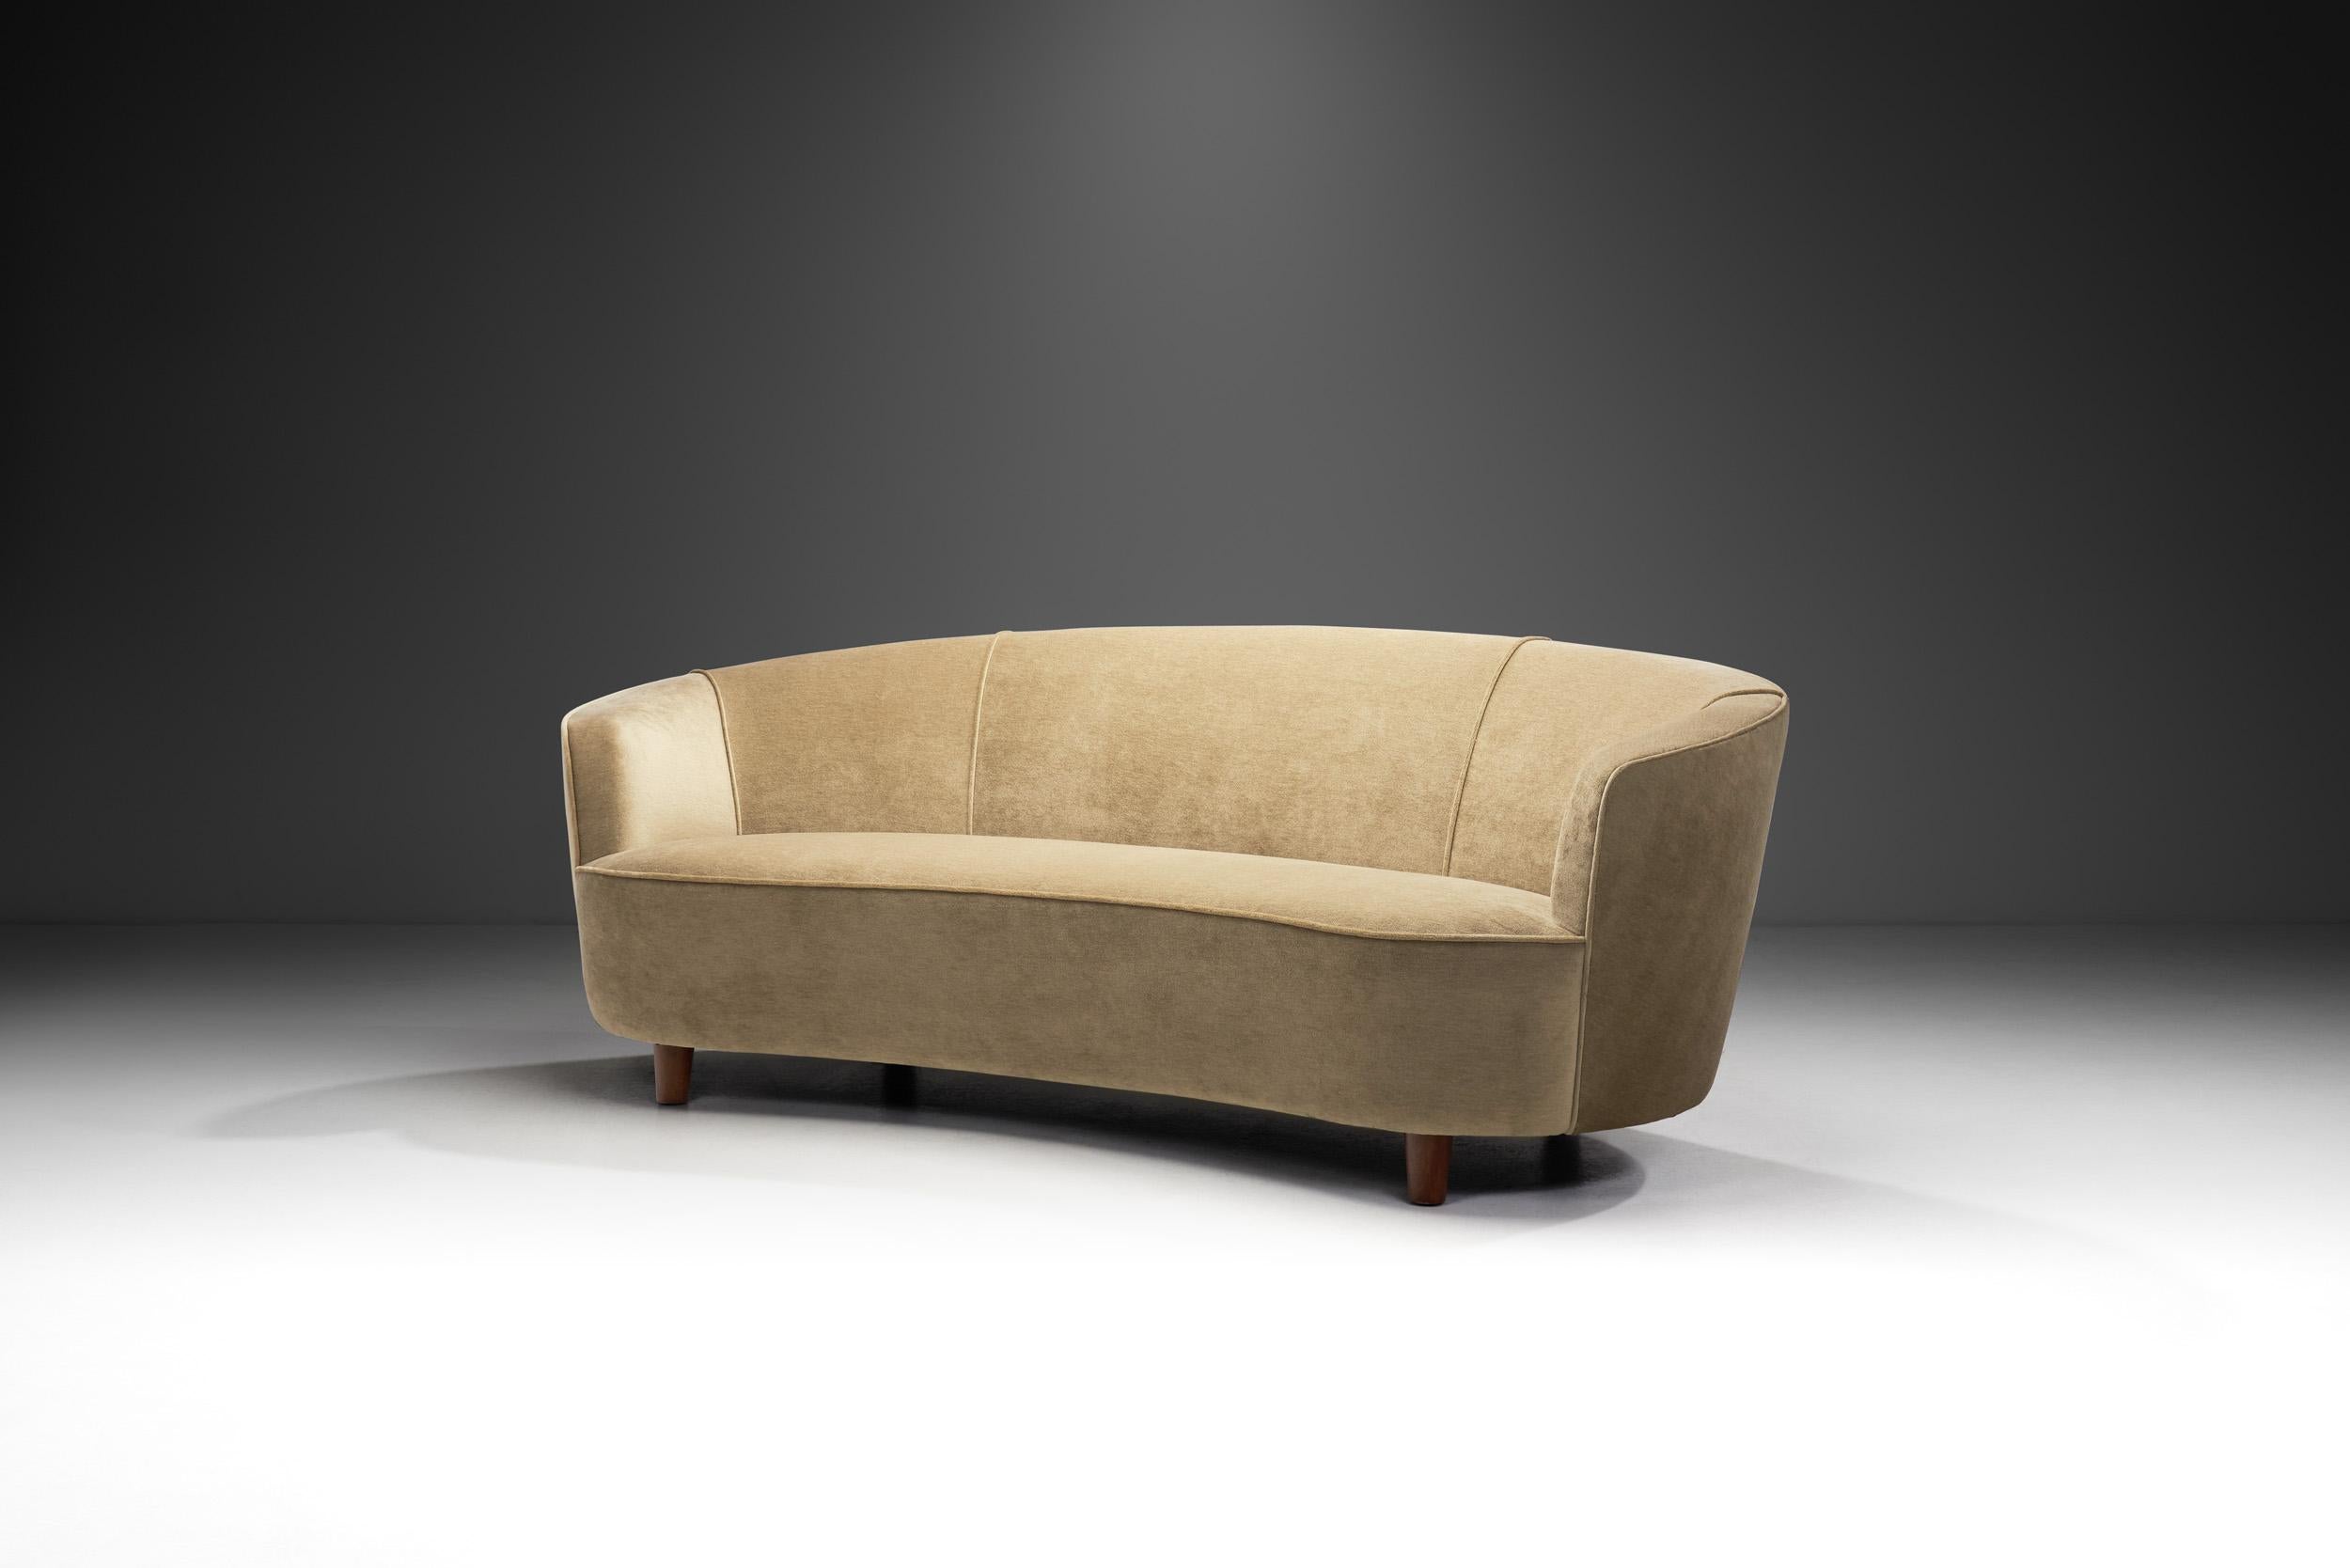 Dieses charmante Sofa wurde in der frühen Phase dessen entworfen, was wir heute als Mid-Century Modern bezeichnen. Es ist ein Beweis dafür, wie die traditionelle schwedische Handwerkskunst in die Moderne einfließt. Um ein modernes Möbelstück aus der